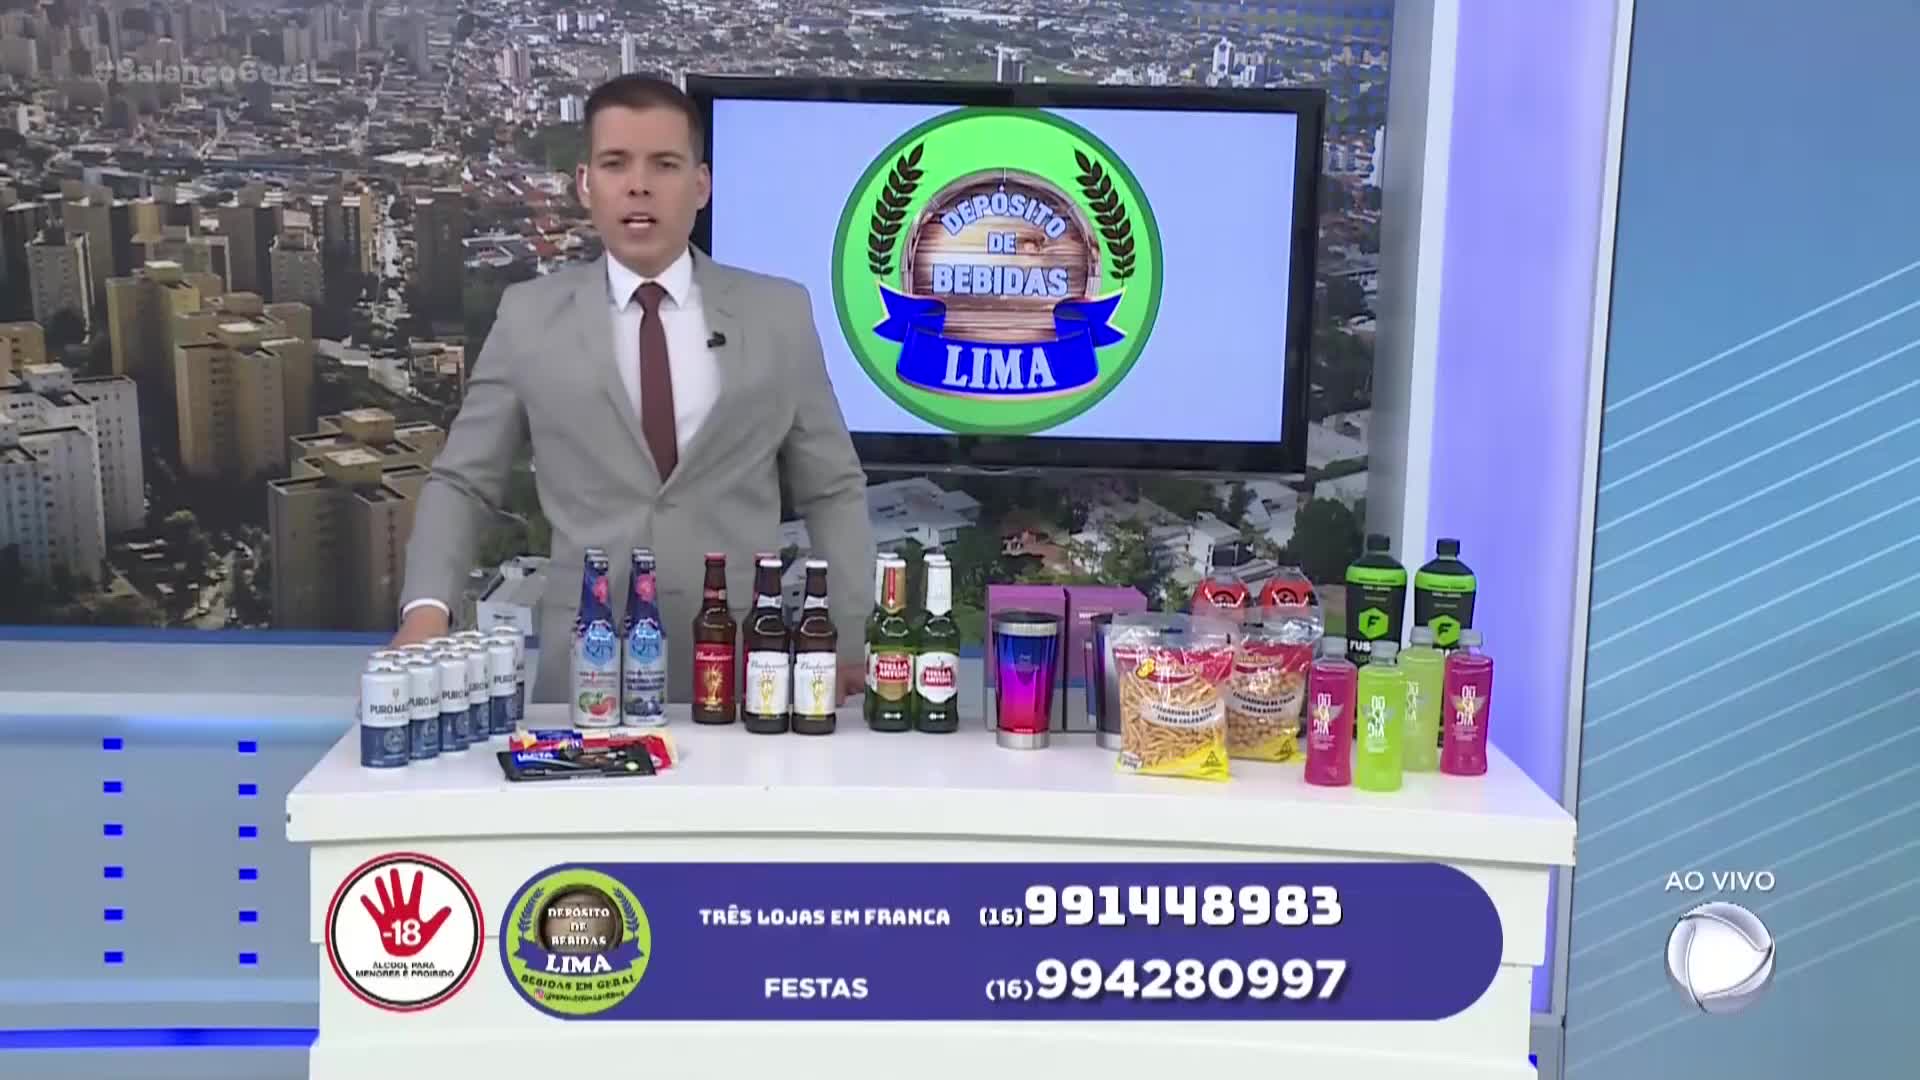 Vídeo: Depósito de Bebidas Lima - Balanço Geral - Exibido em 07/12/2022